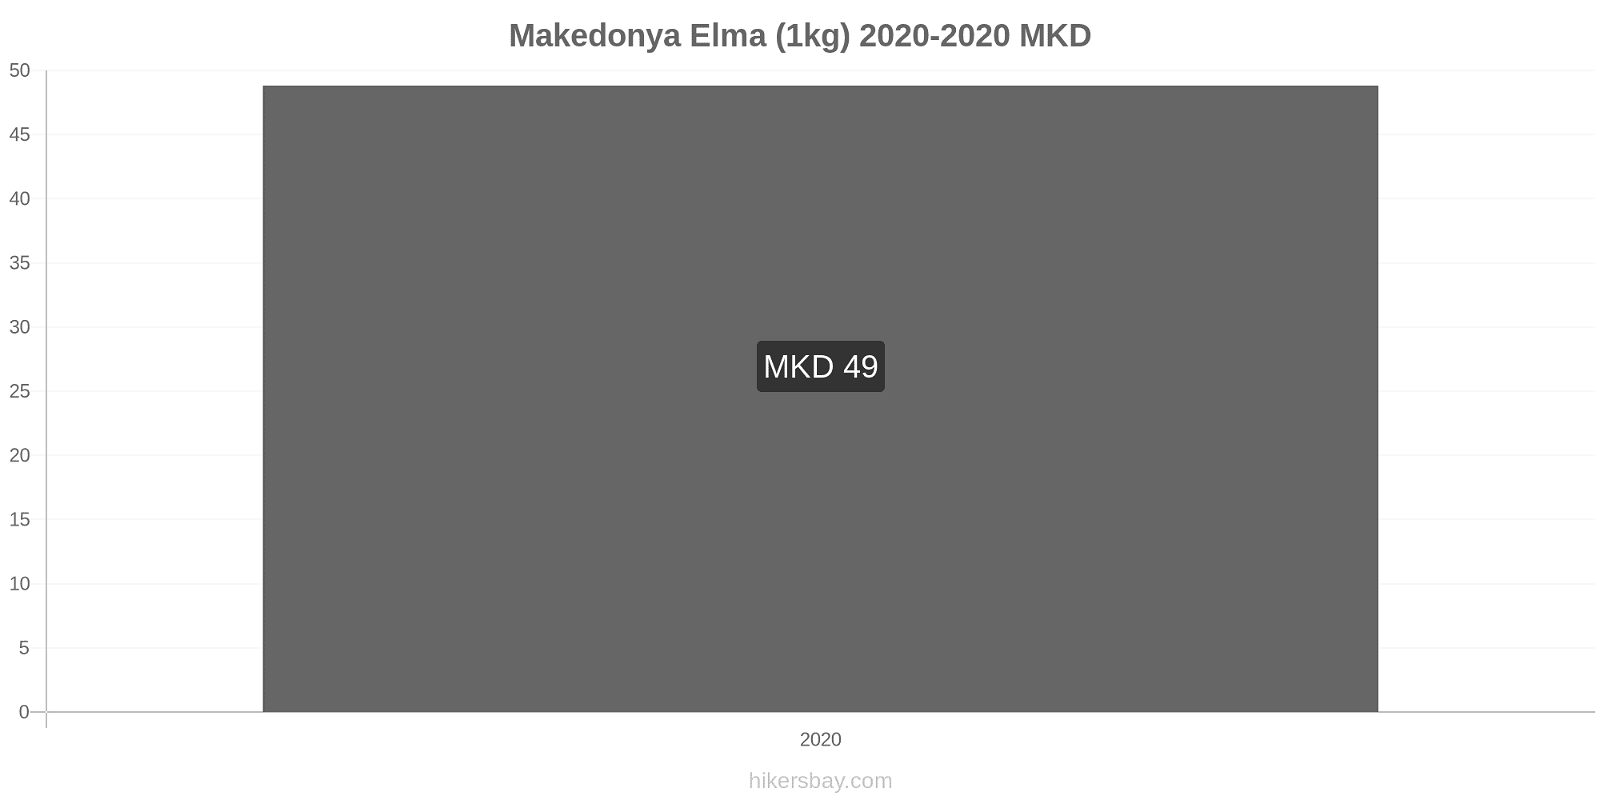 Makedonya fiyat değişiklikleri Elma (1kg) hikersbay.com